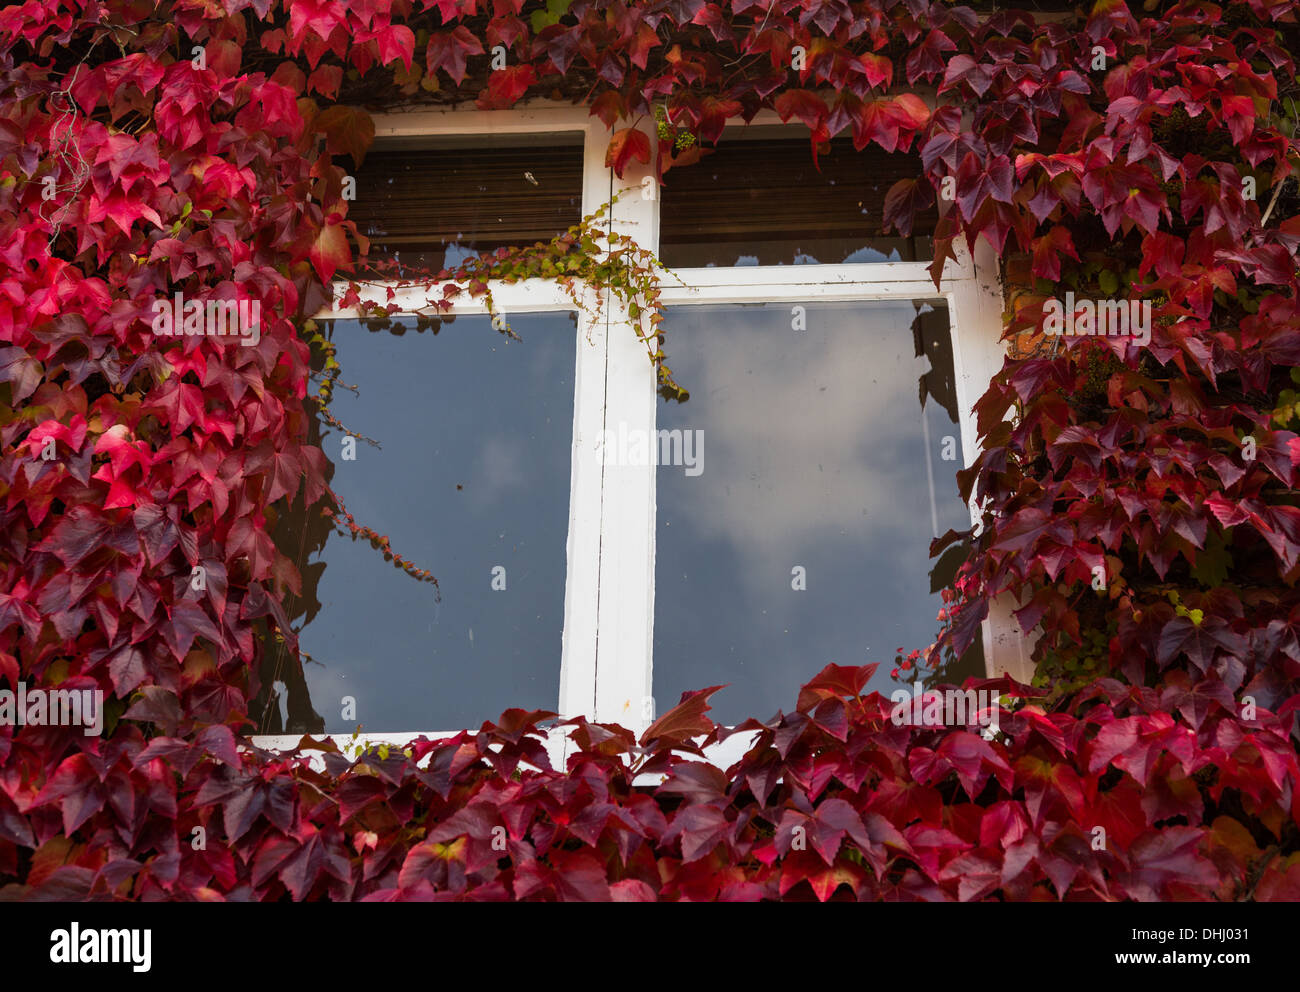 Croissance des feuilles de lierre vert et rouge entourant une fenêtre Banque D'Images